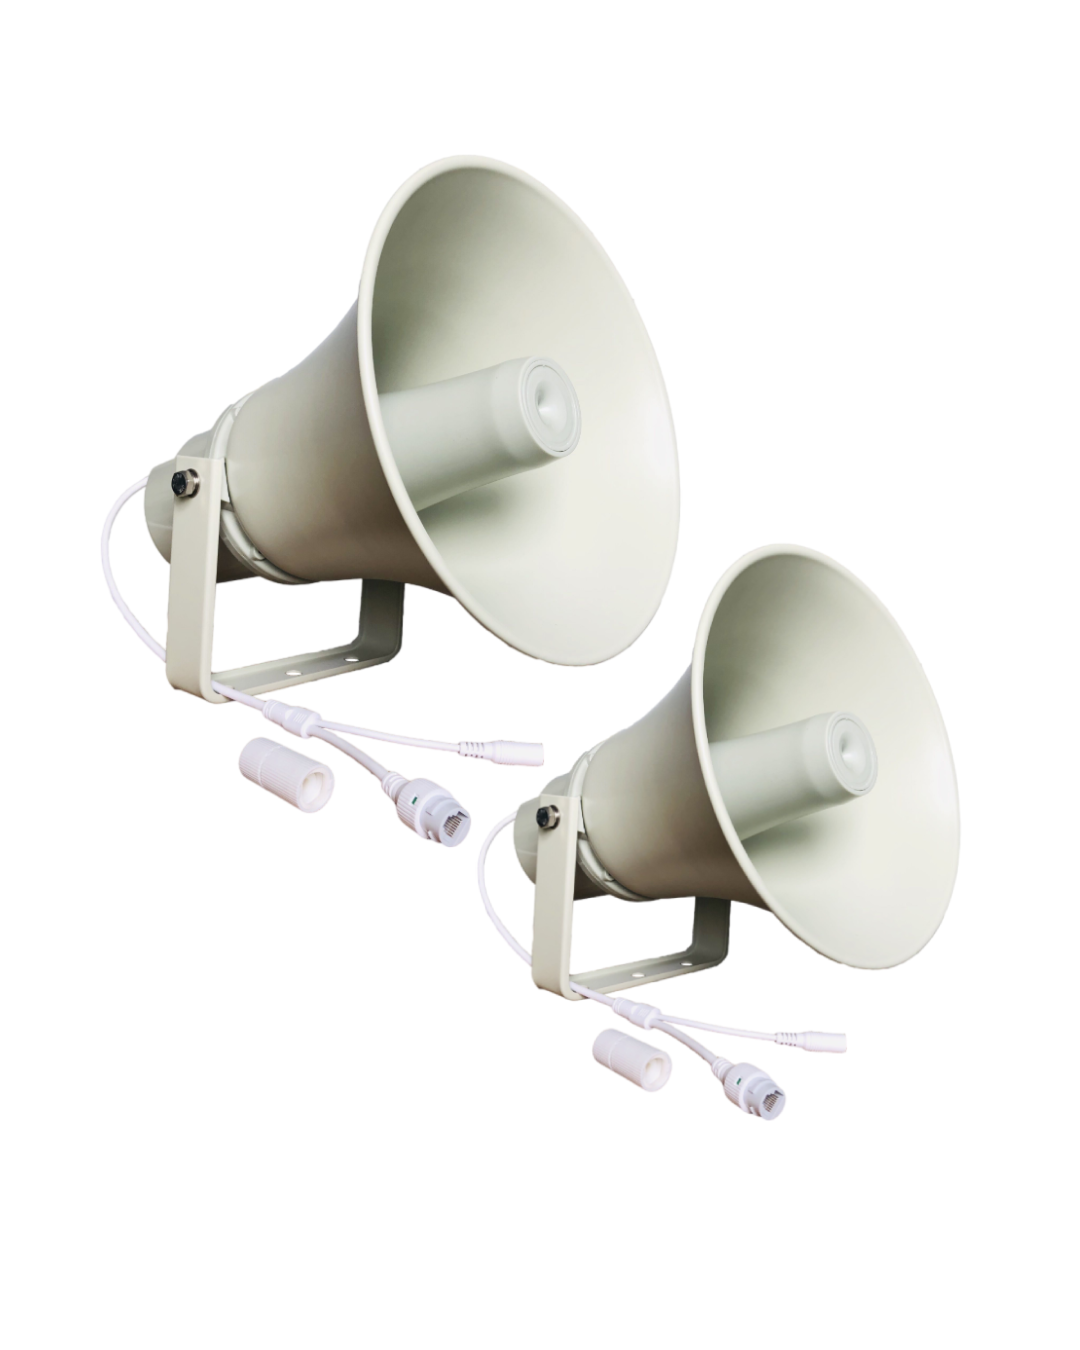 Advantages of SINREY Network Horn Speaker